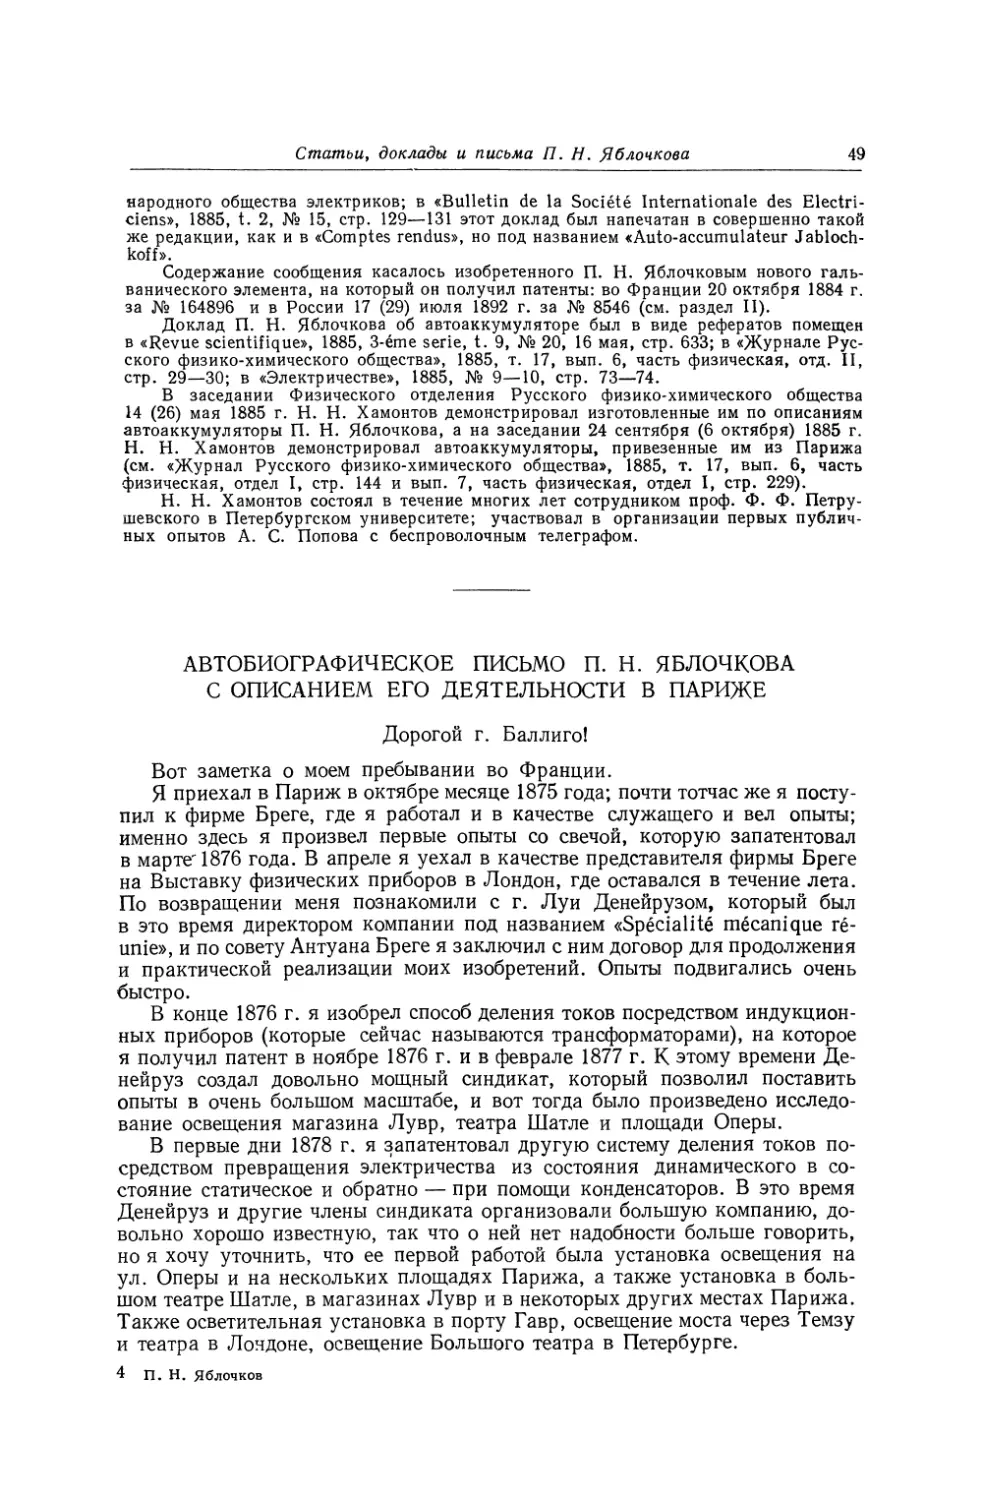 Автобиографическое письмо П. Н. Яблочкова с описанием его деятельности в Париже